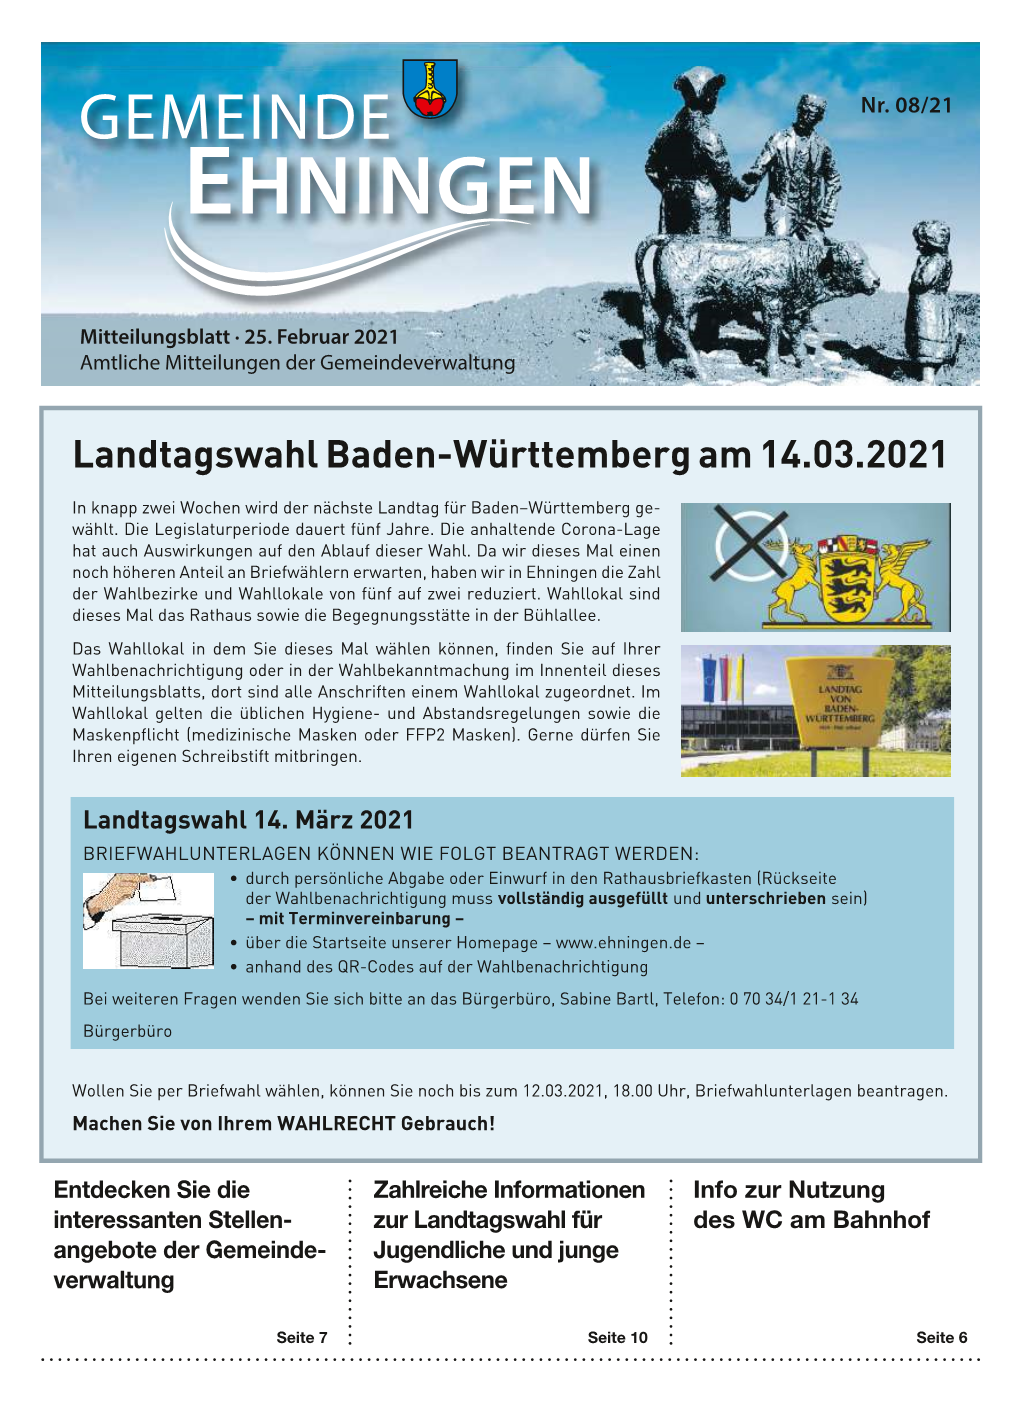 Landtagswahl Baden-Württemberg Am 14.03.2021